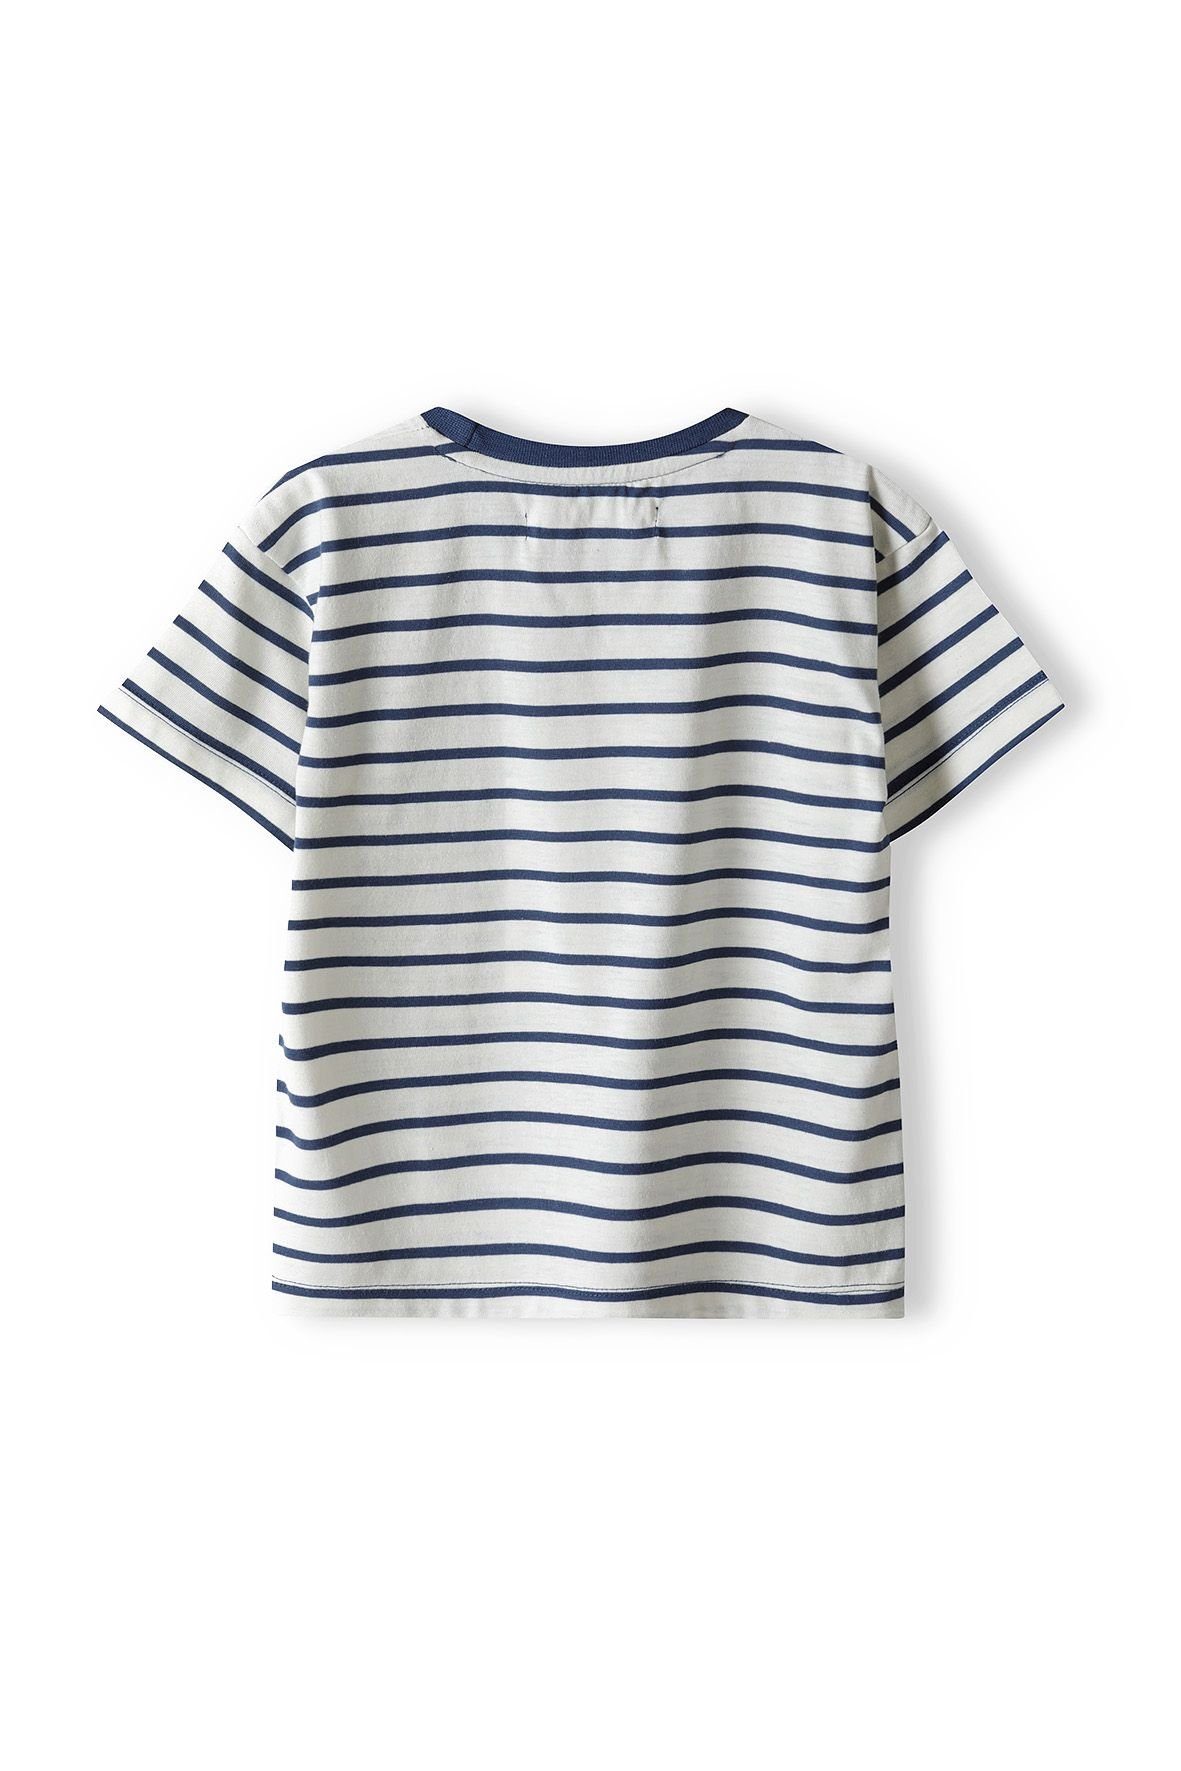 MINOTI T-Shirt Gelbbraun & Sweatbermudas und T-Shirt Set (12m-8y) Shorts